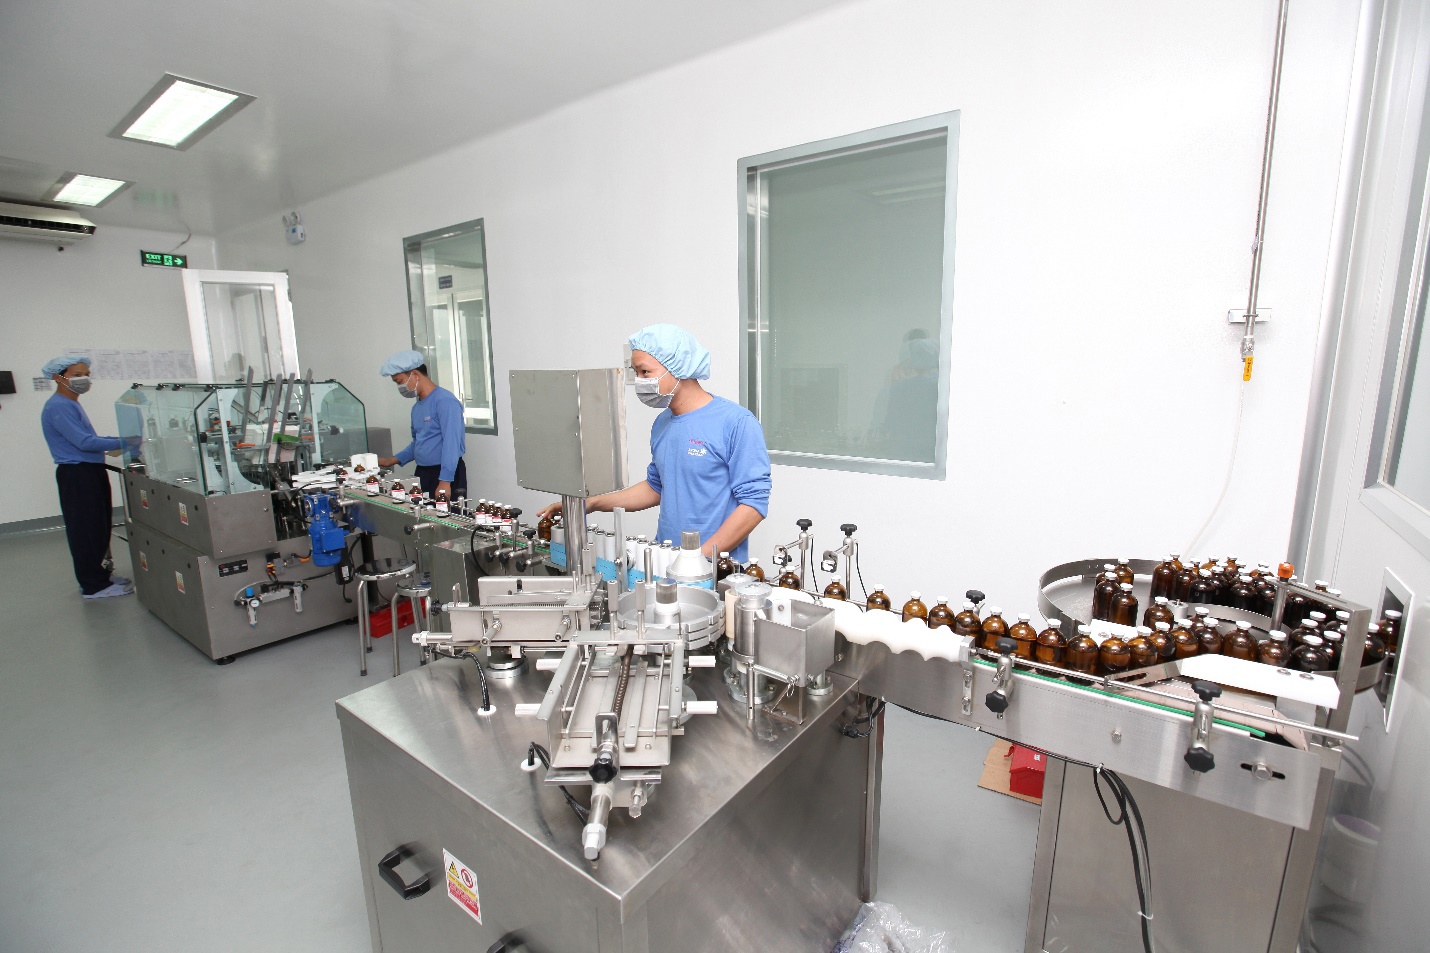 Dây chuyền sản xuất sản phẩm thuốc thú y, thuốc thủy sản đạt chuẩn WHO-GMP tại Anova Pharma - một thành viên của Nova Consumer. Ảnh: NVL.